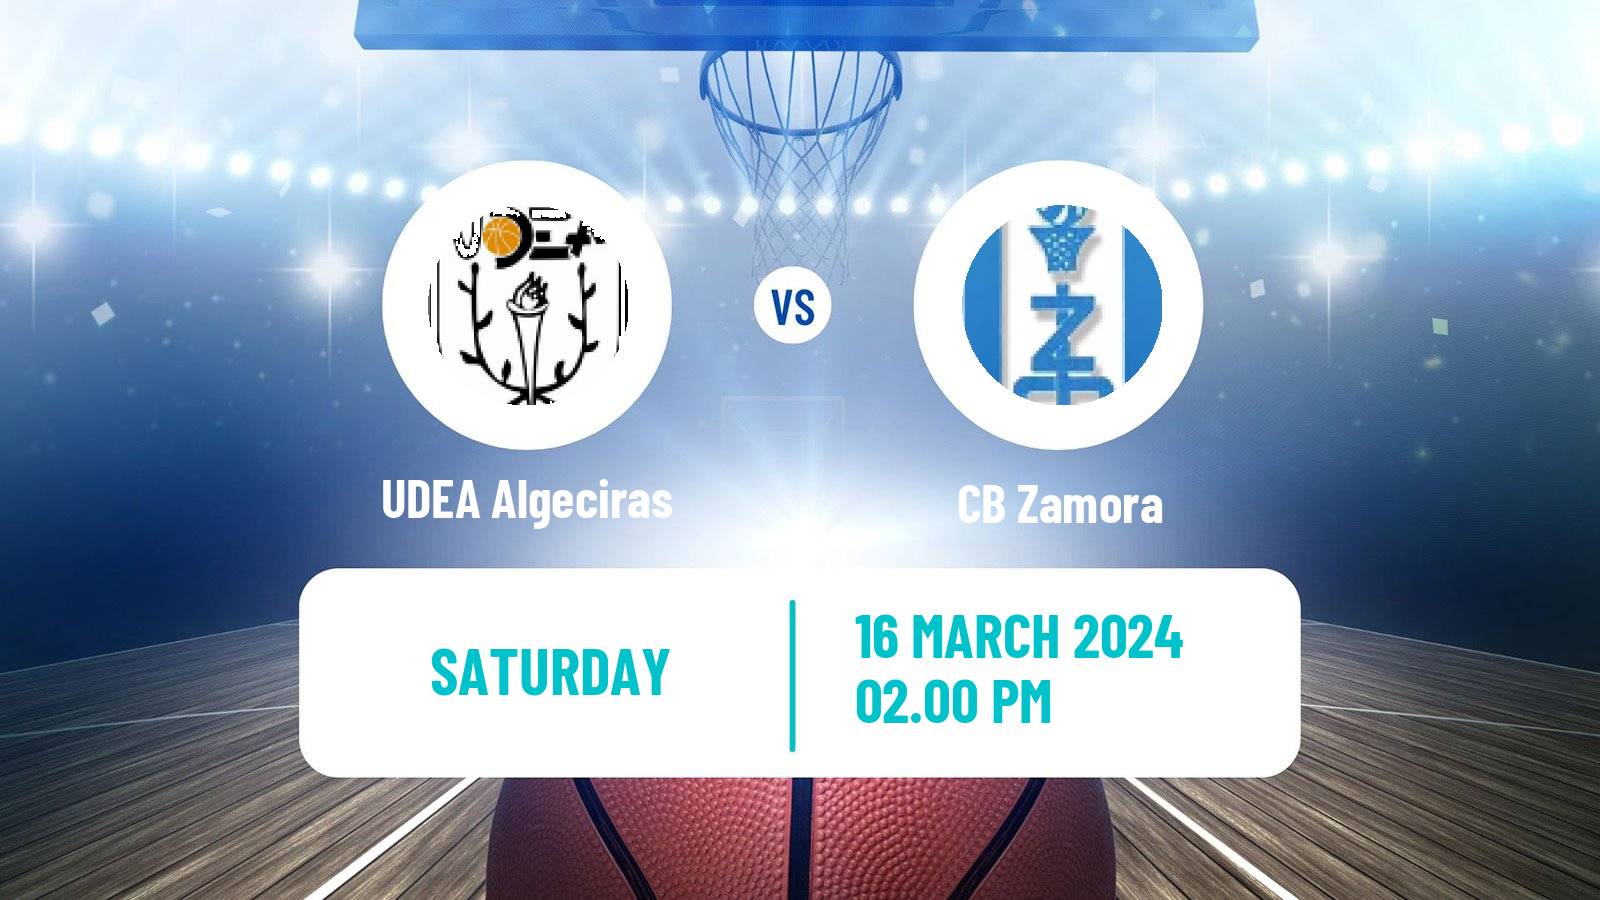 Basketball Spanish LEB Plata UDEA Algeciras - Zamora